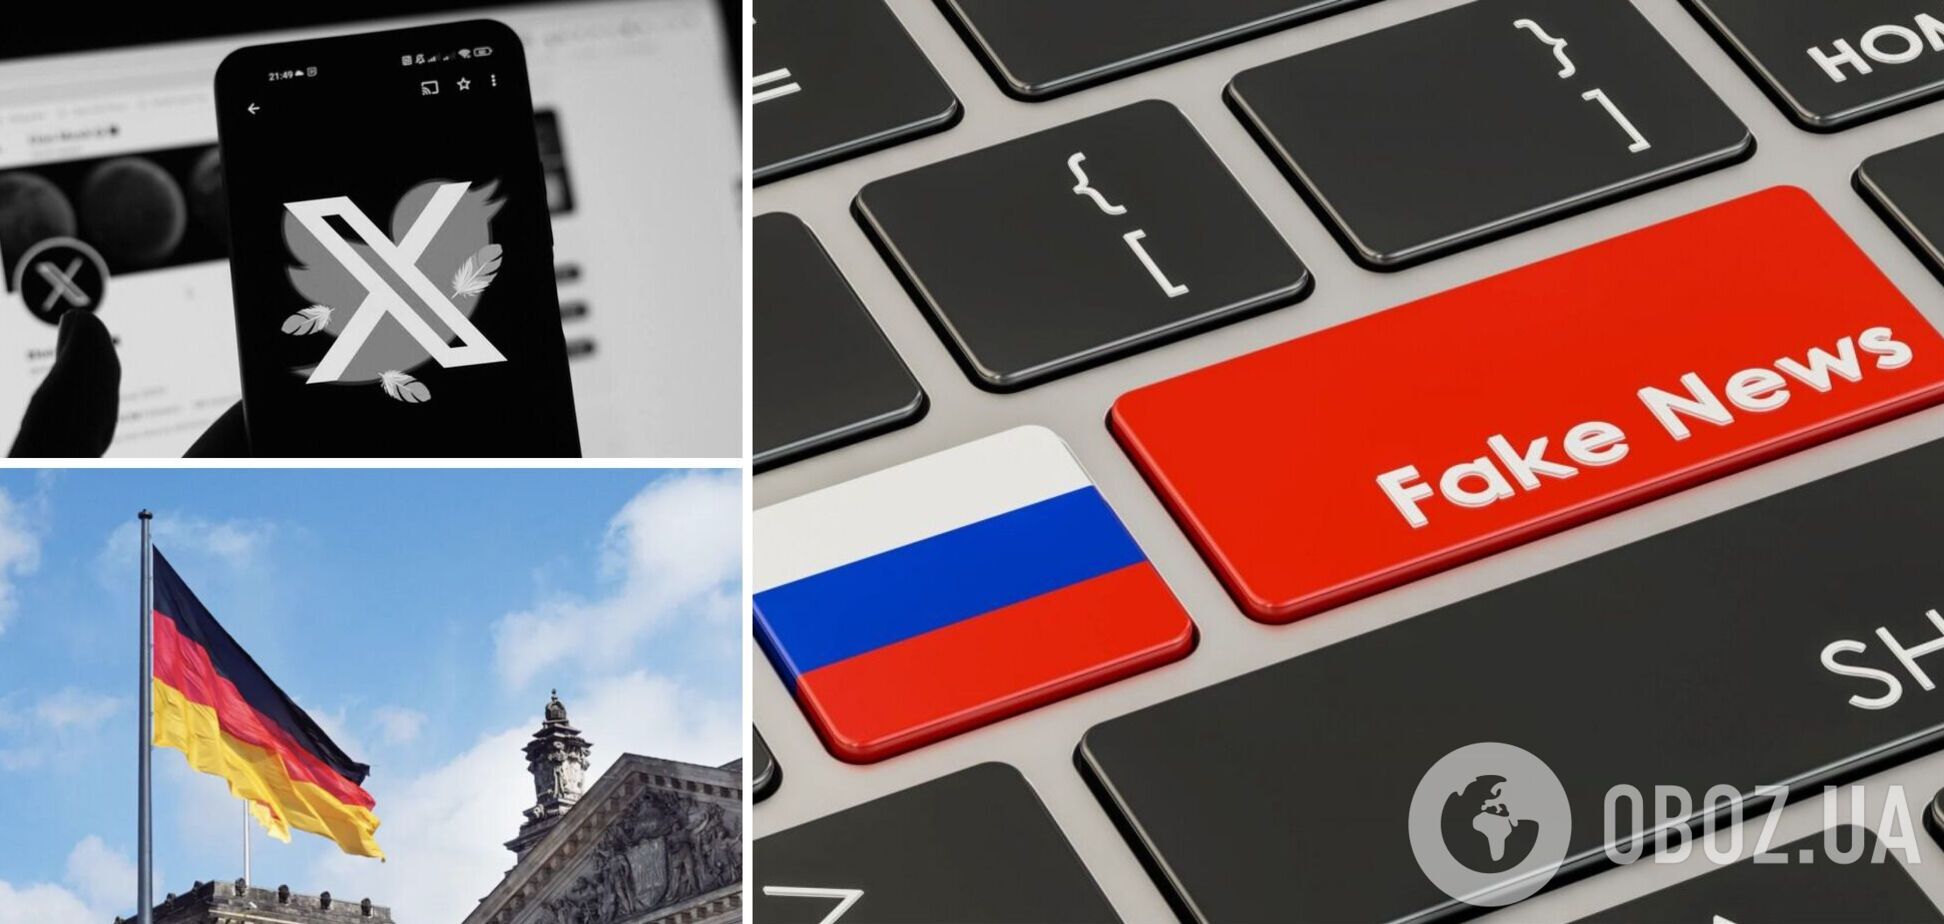 Тысячи фейковых аккаунтов: Германия разоблачила масштабную пророссийскую дезинформационную кампанию в сети Х